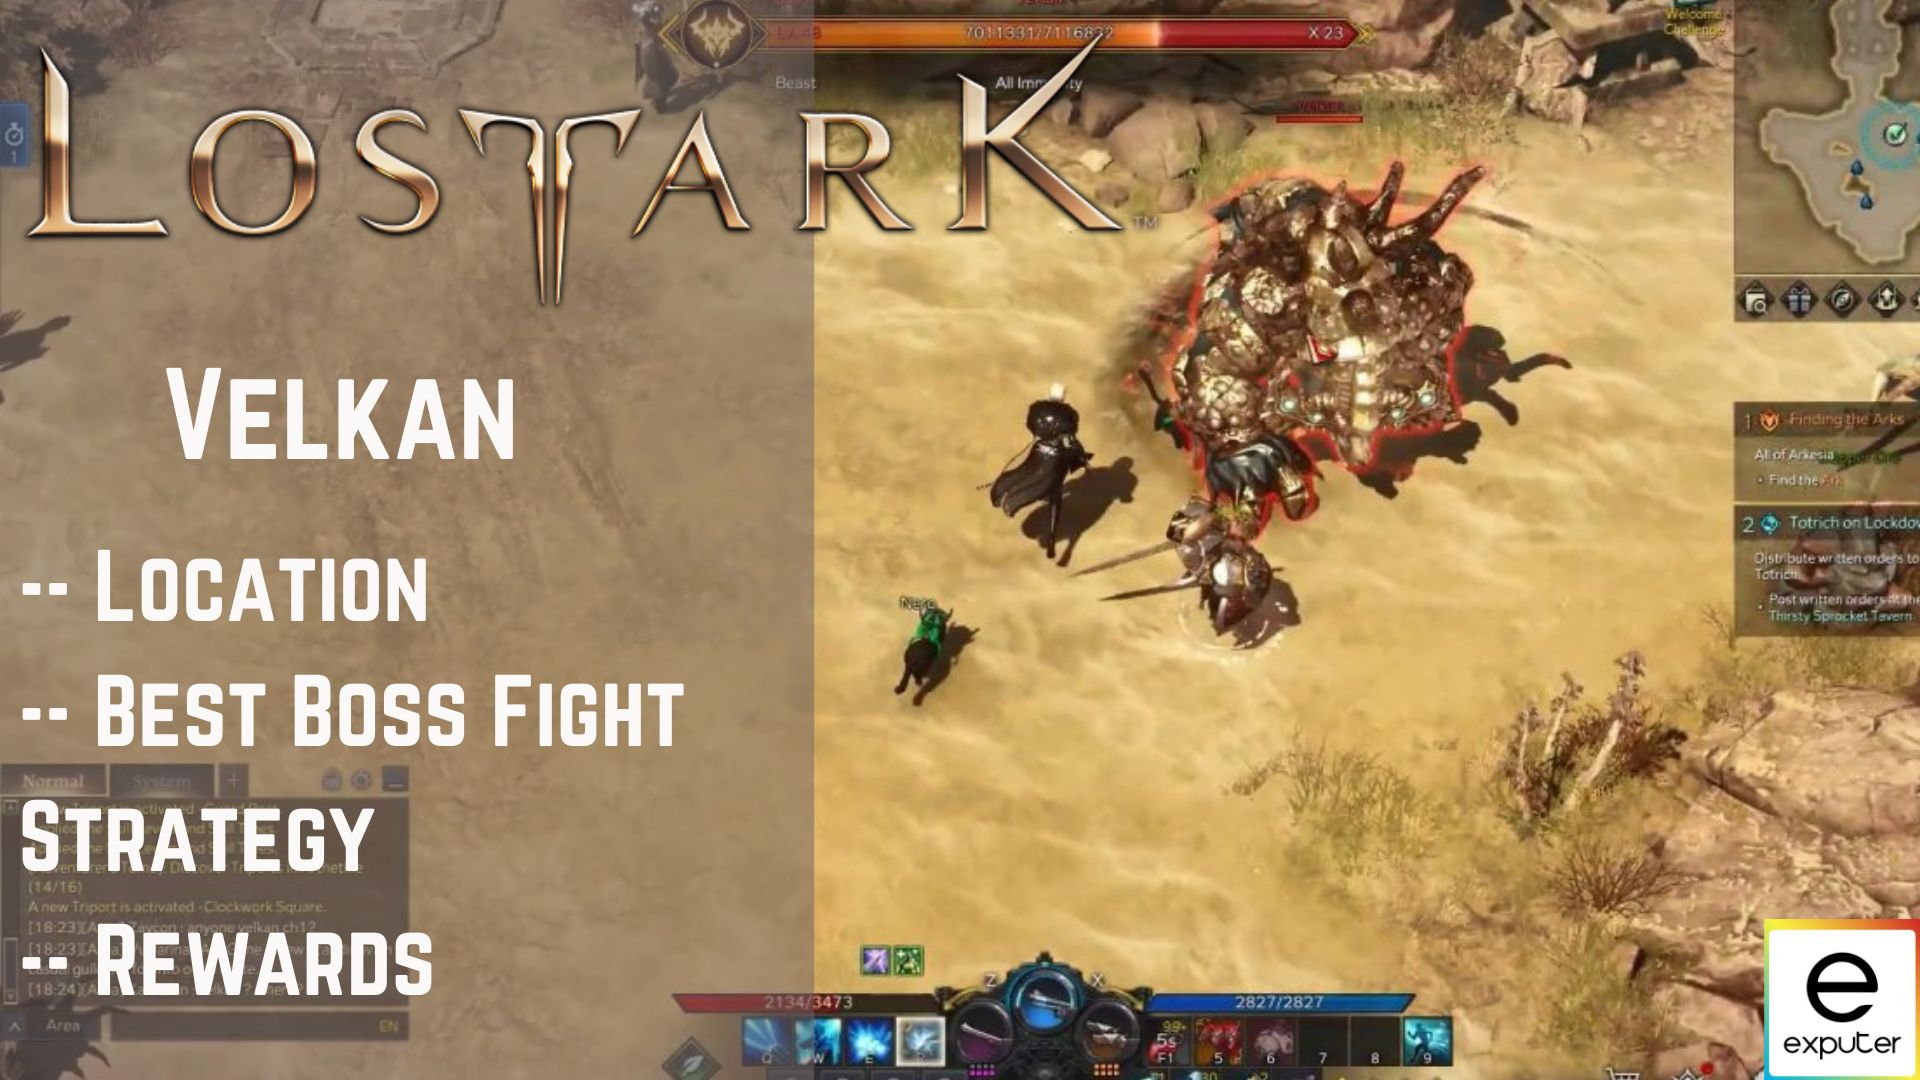 Lost Ark Velkan: Location, Boss Fight & Rewards - eXputer.com